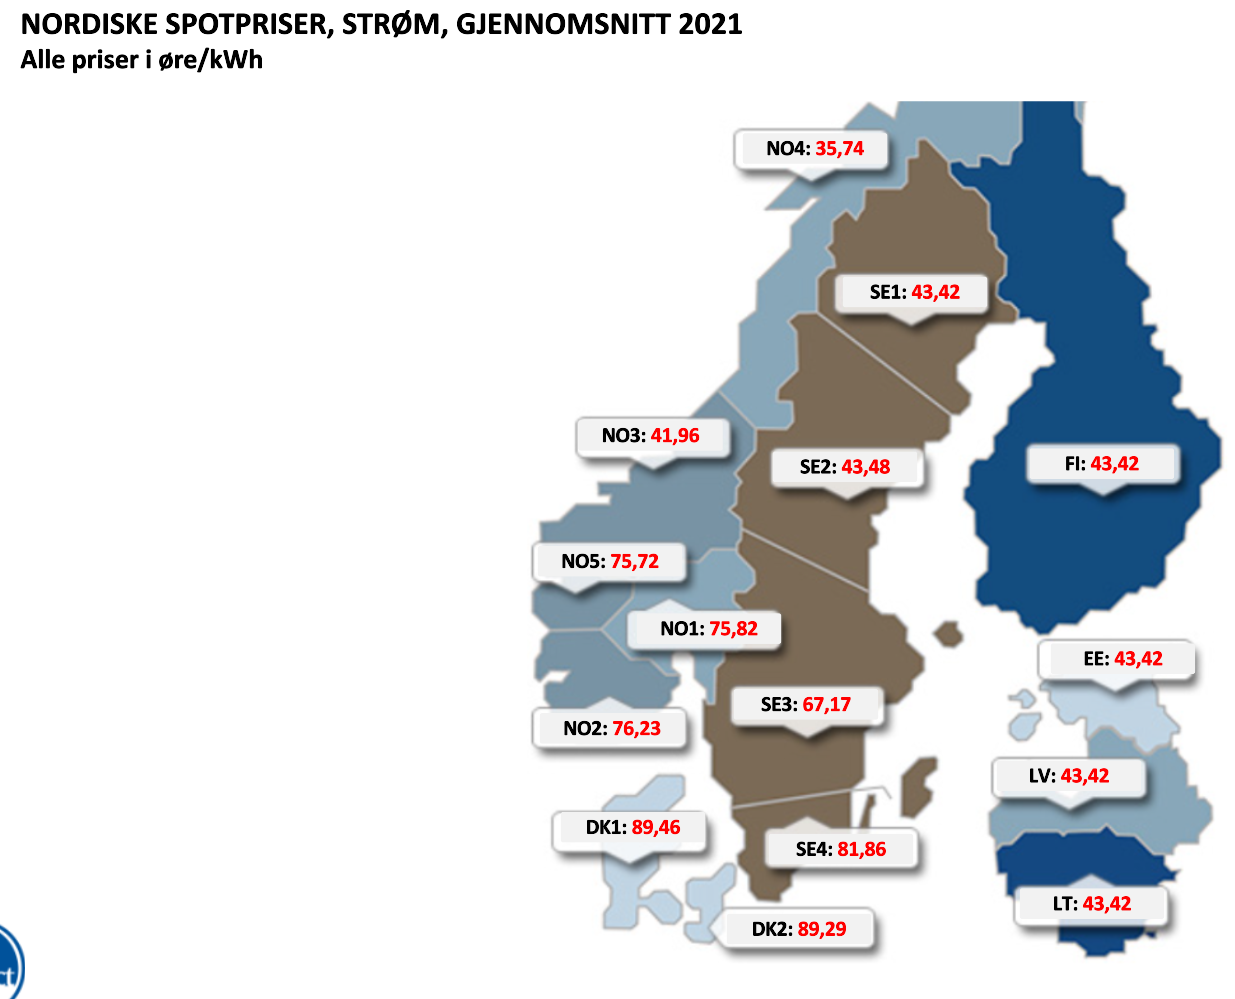 Nordiske spotpriser gjennnomsnitt 2021.png